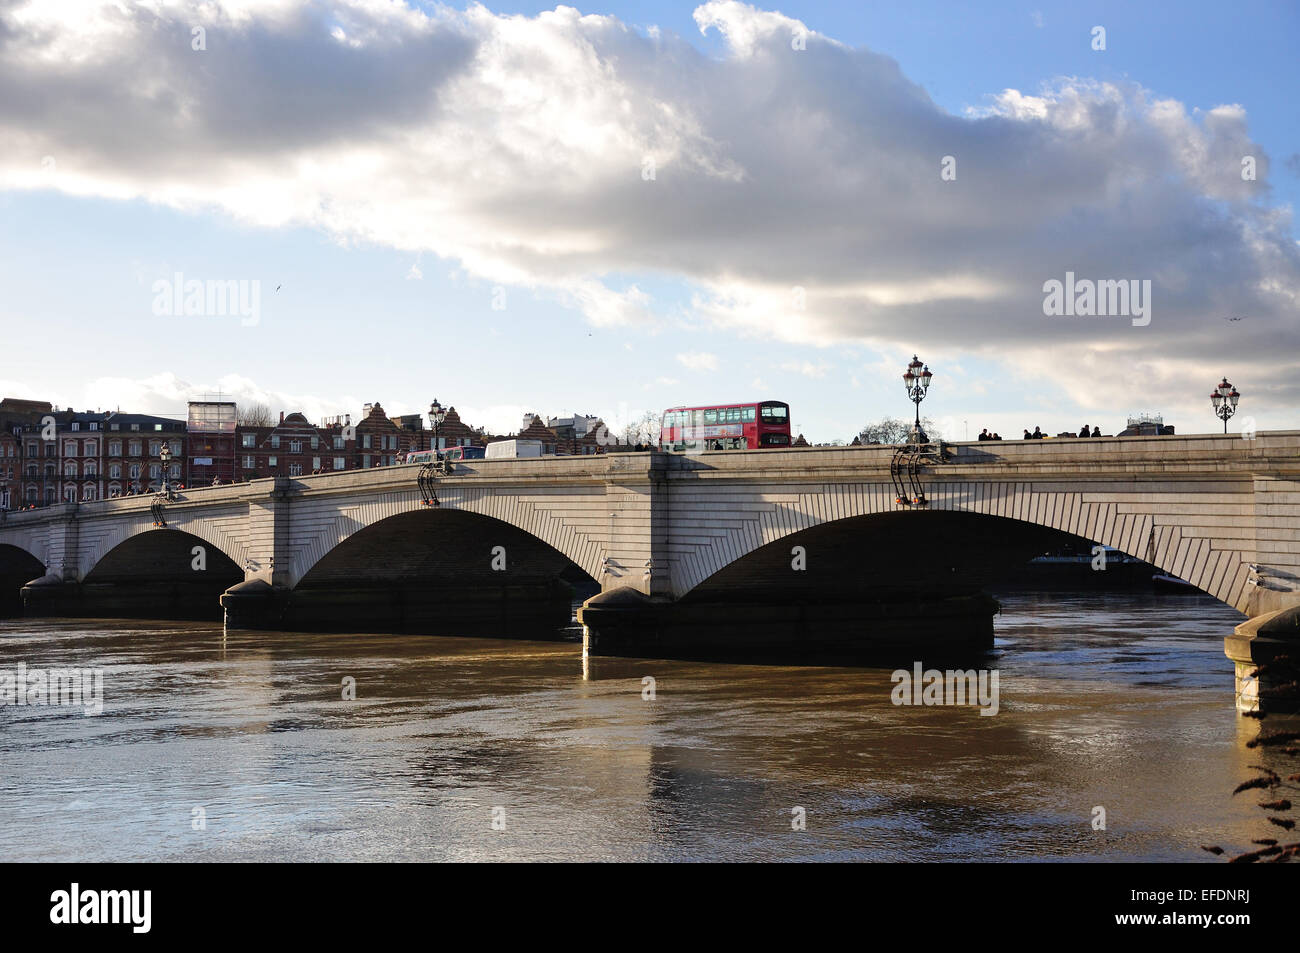 Putney Bridge et la Tamise depuis le bord de la rivière Willow Bank, Fulham, London Borough of Hammersmith and Fulham, Greater London, Angleterre, Royaume-Uni Banque D'Images